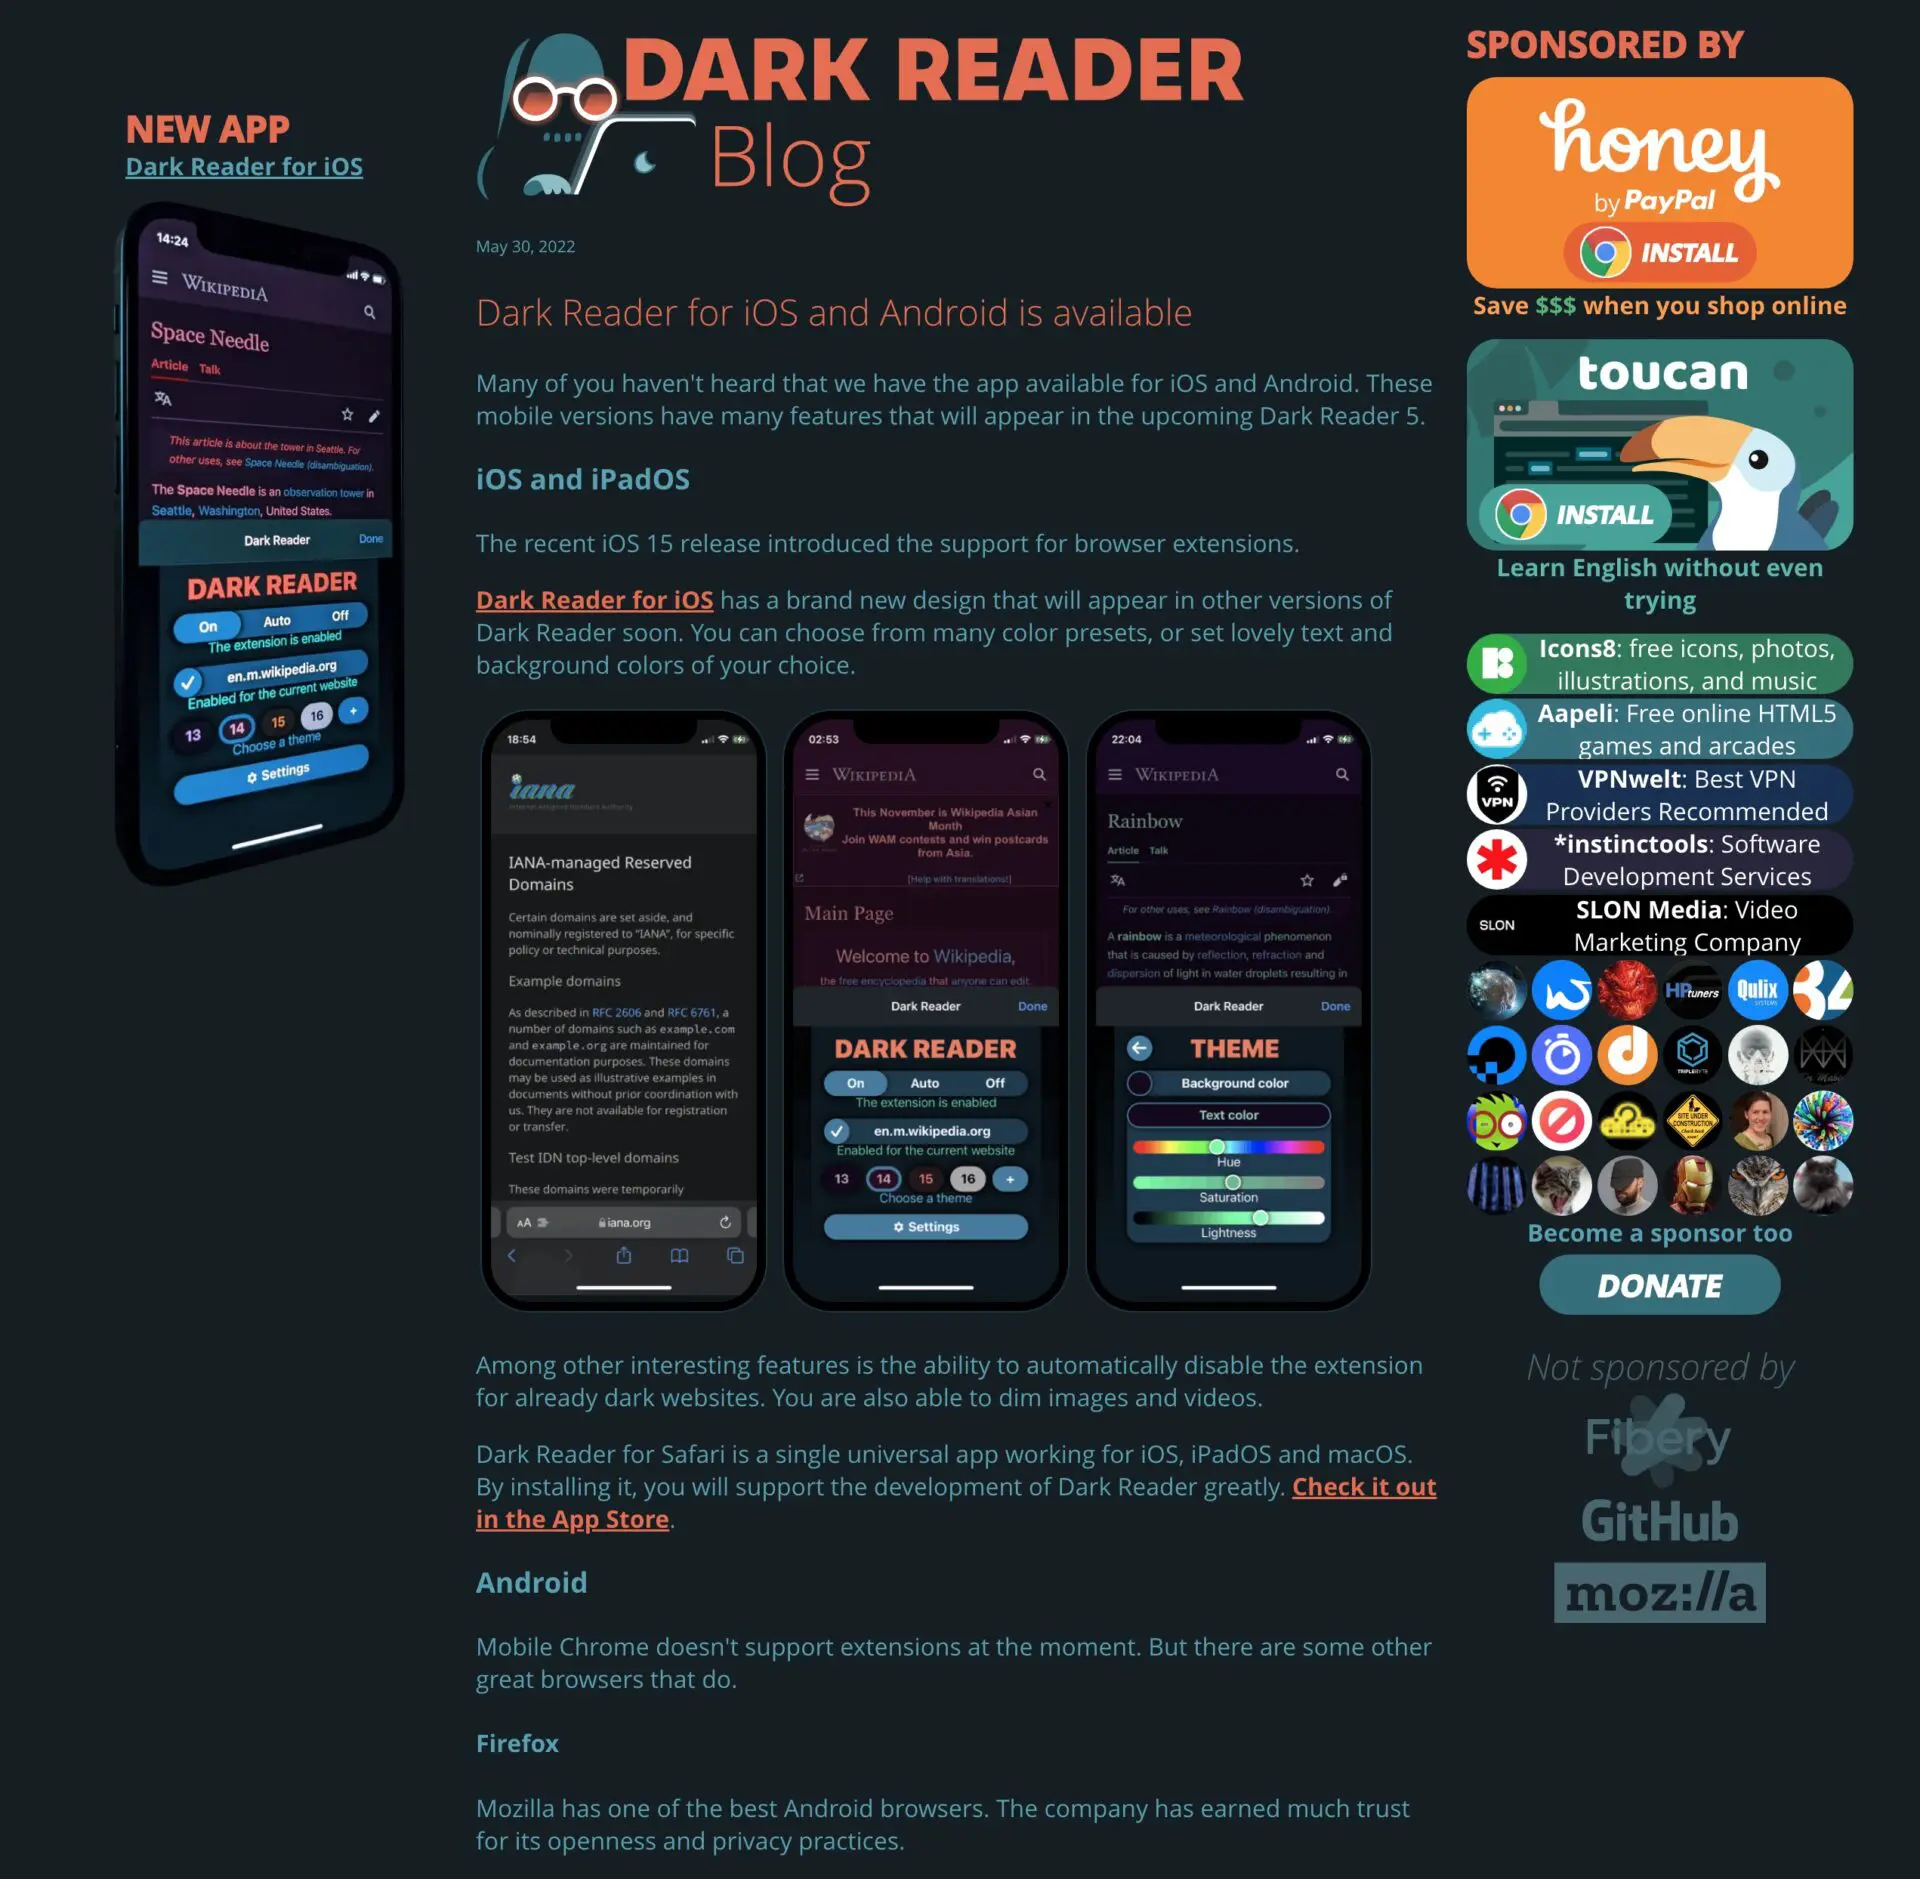 Dark Reader blog